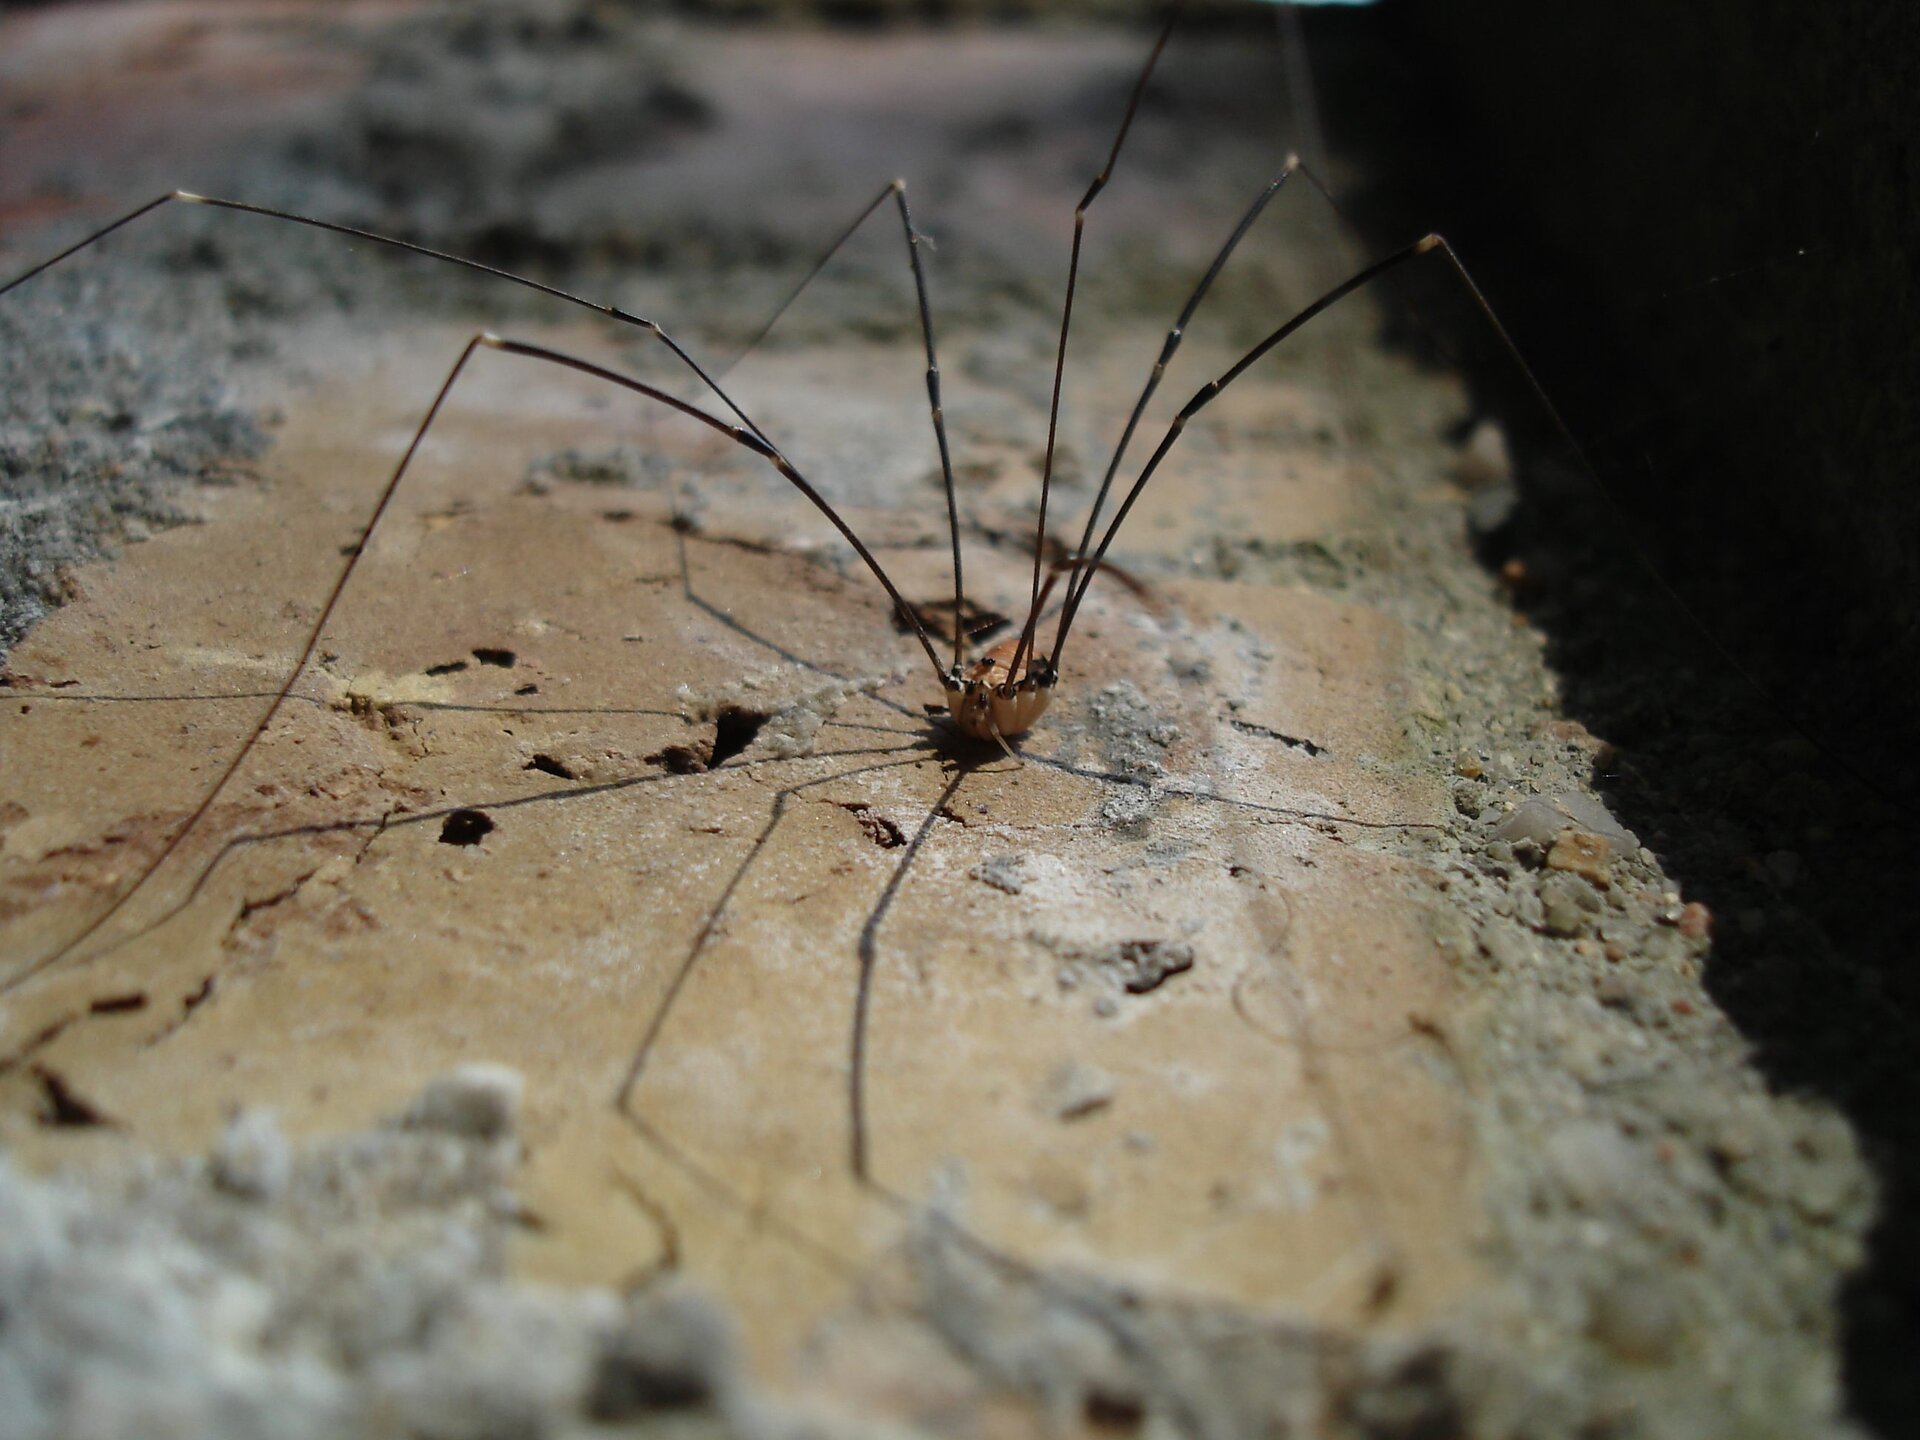 Galeria składa się z fotografii przedstawicieli pajęczaków. Fotografia przedstawia stojącego na kawałku muru małego pająka z bardzo długimi, cienkimi odnóżami. Jego beżowe ciało wygląda jak zawieszone pomiędzy nimi. To kosarz ścienny, żyjący w naszych domach.